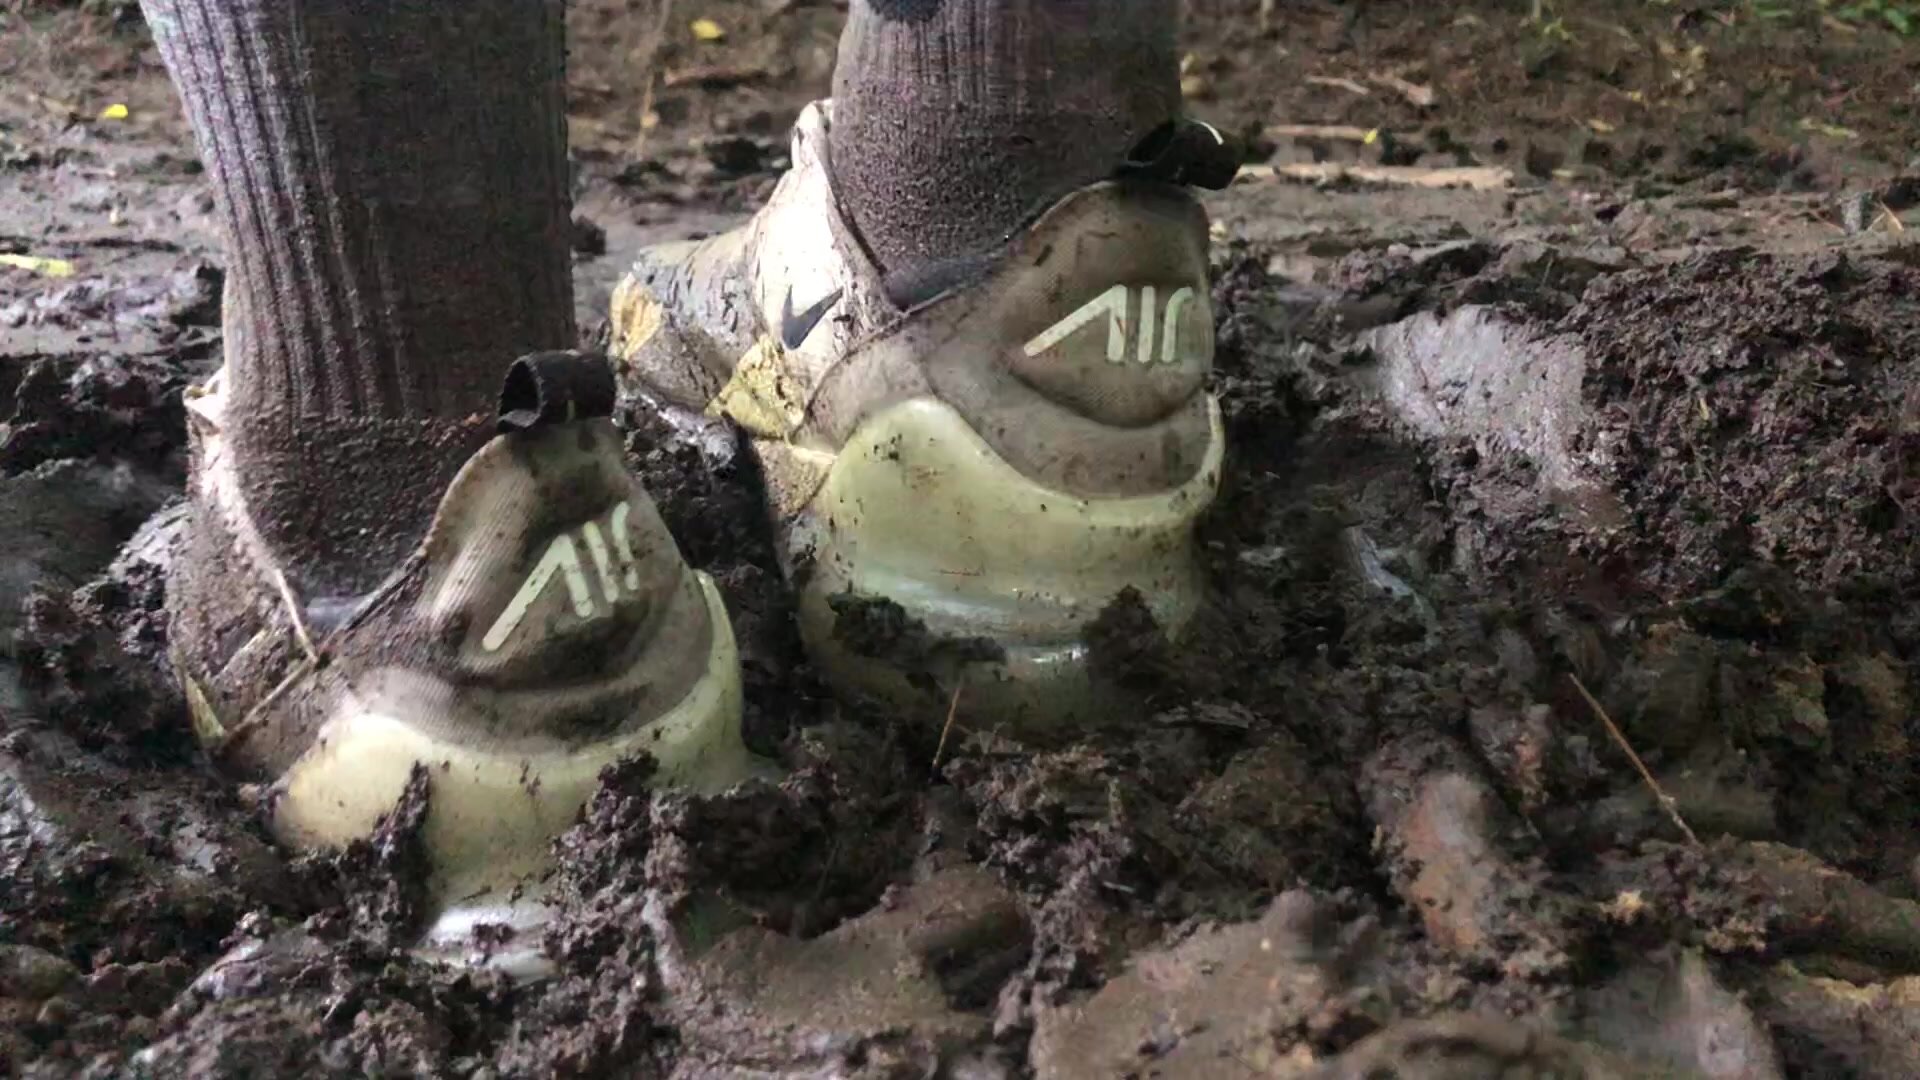 Muddy Nike 270